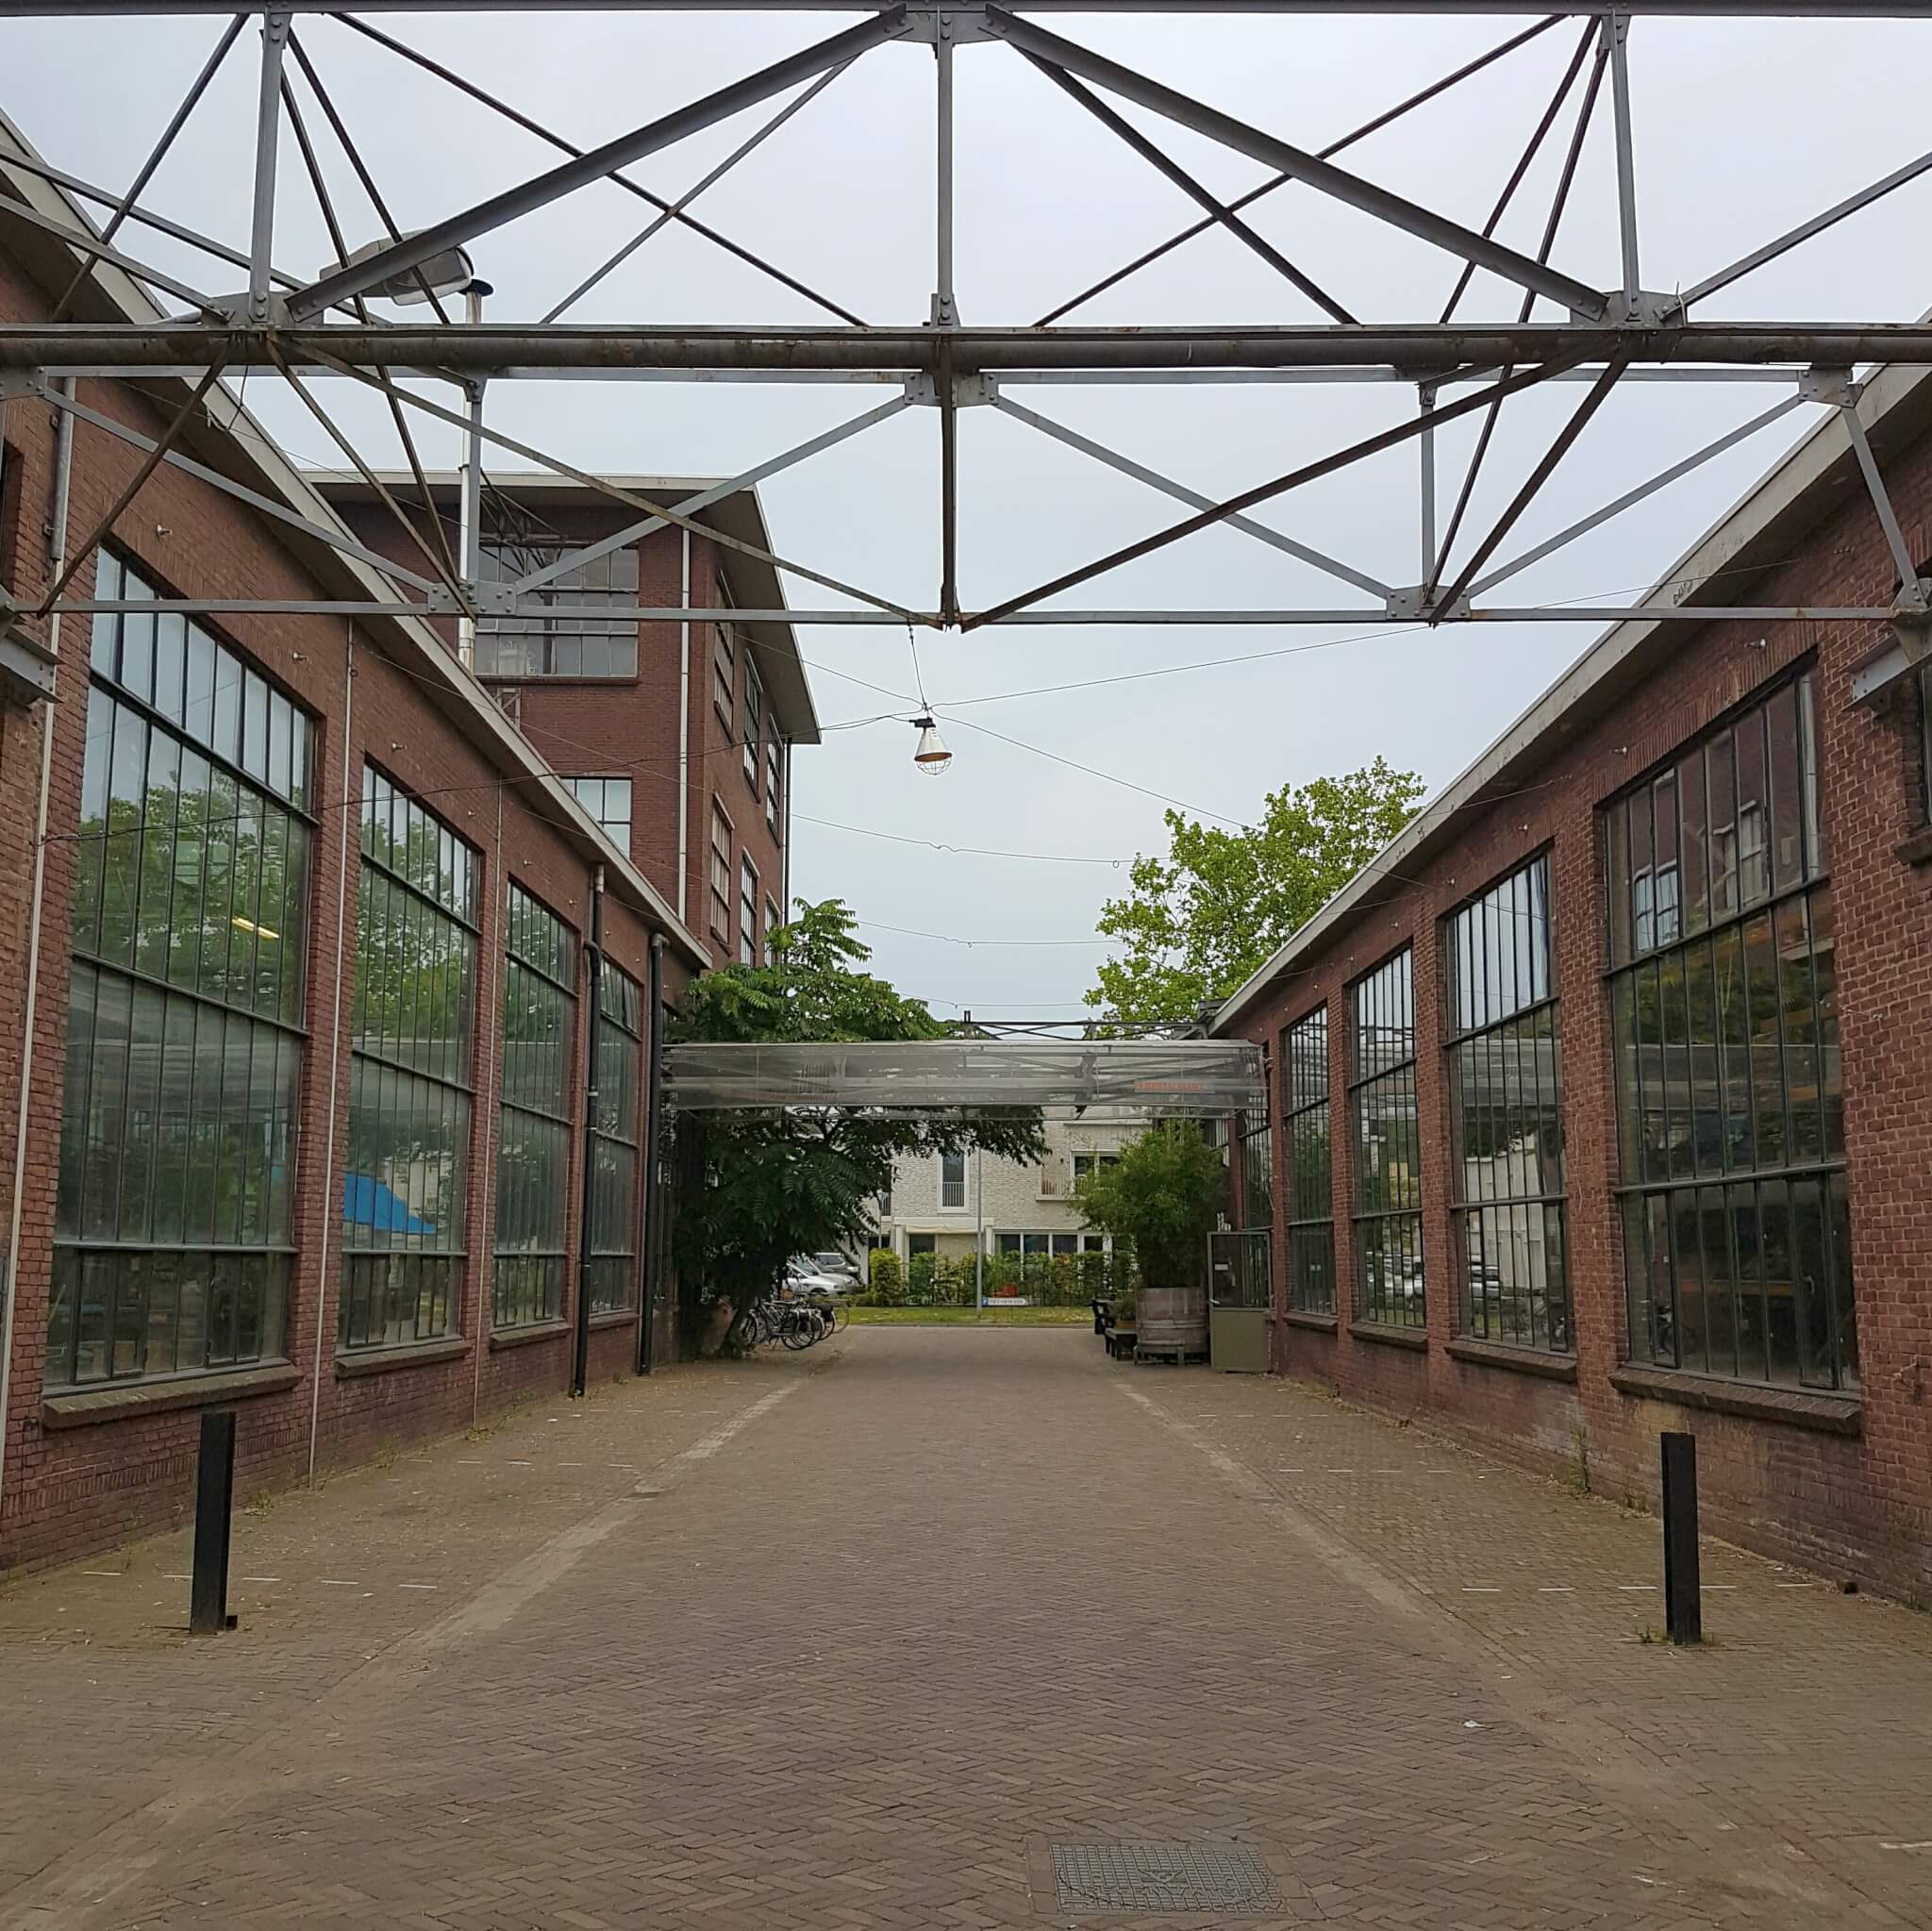 Uitje met kinderen naar de landelijke en industriële Strijp in Eindhoven: speeltuin, industrieel erfgoed, winkelen, pannekoekenhuis én fruittuin